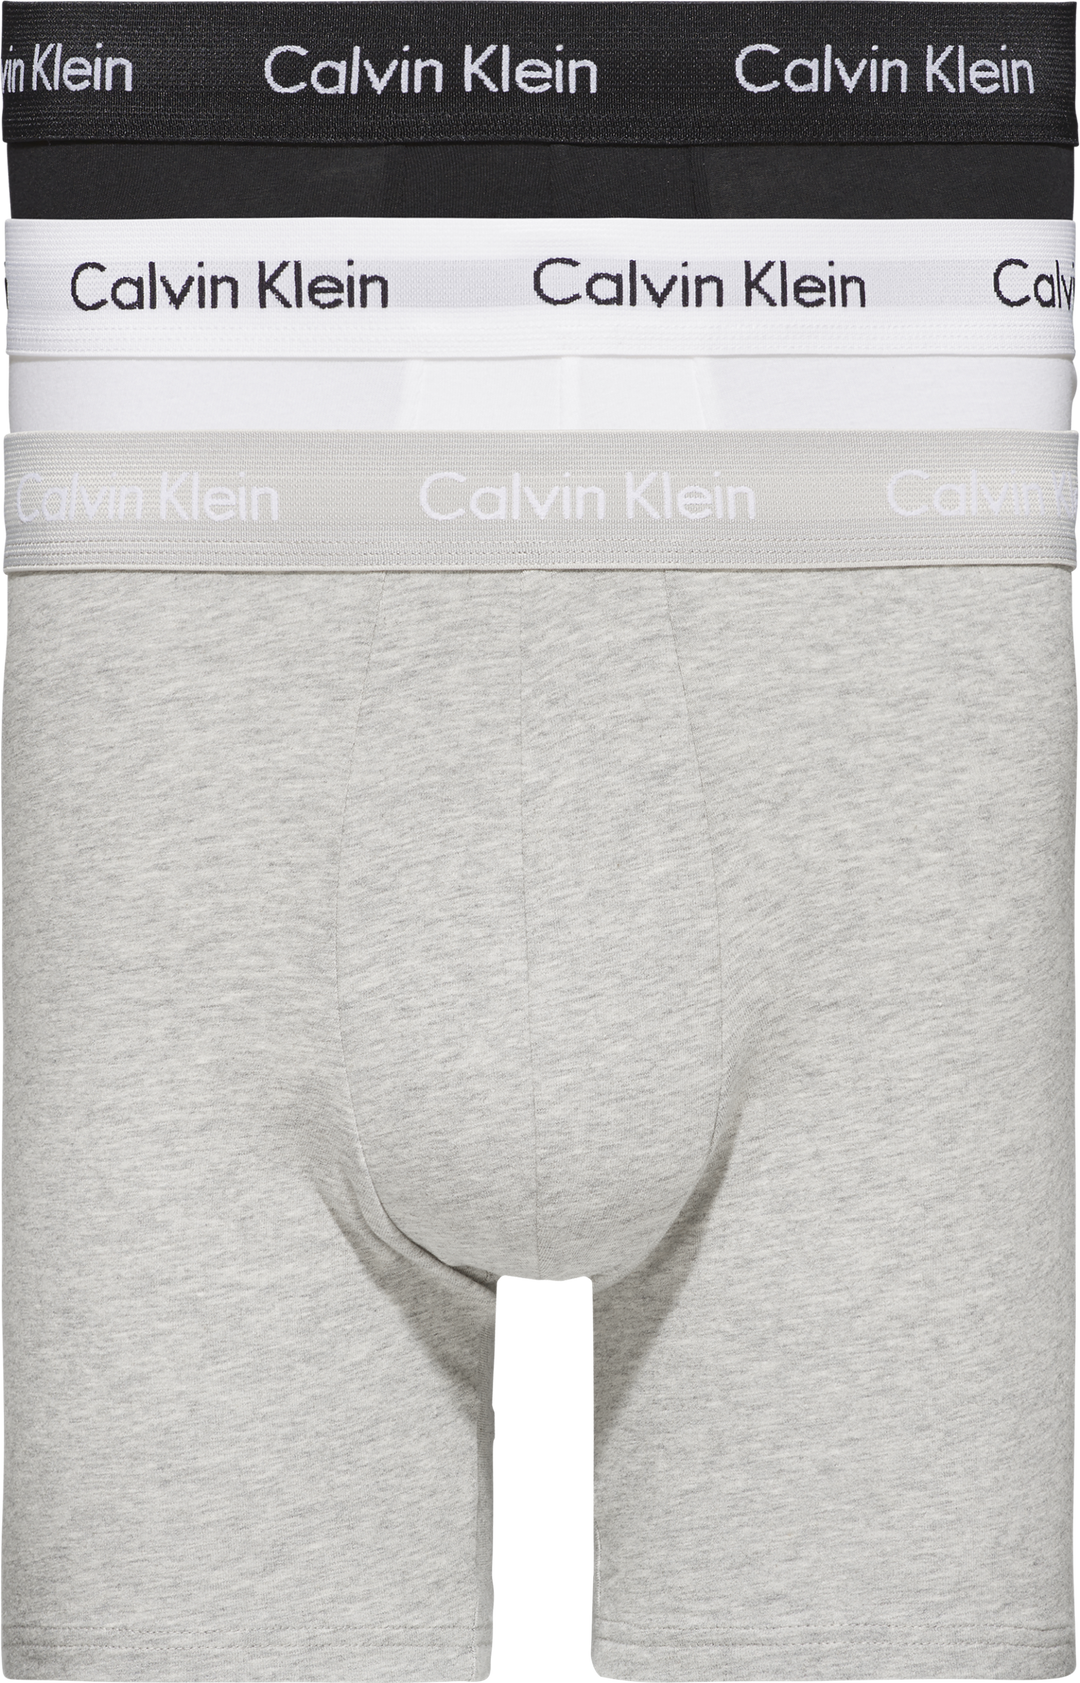 CALVIN KLEIN UNDERWEAR - BOXER BRIEF 3PK Black/White/Grey - Dale